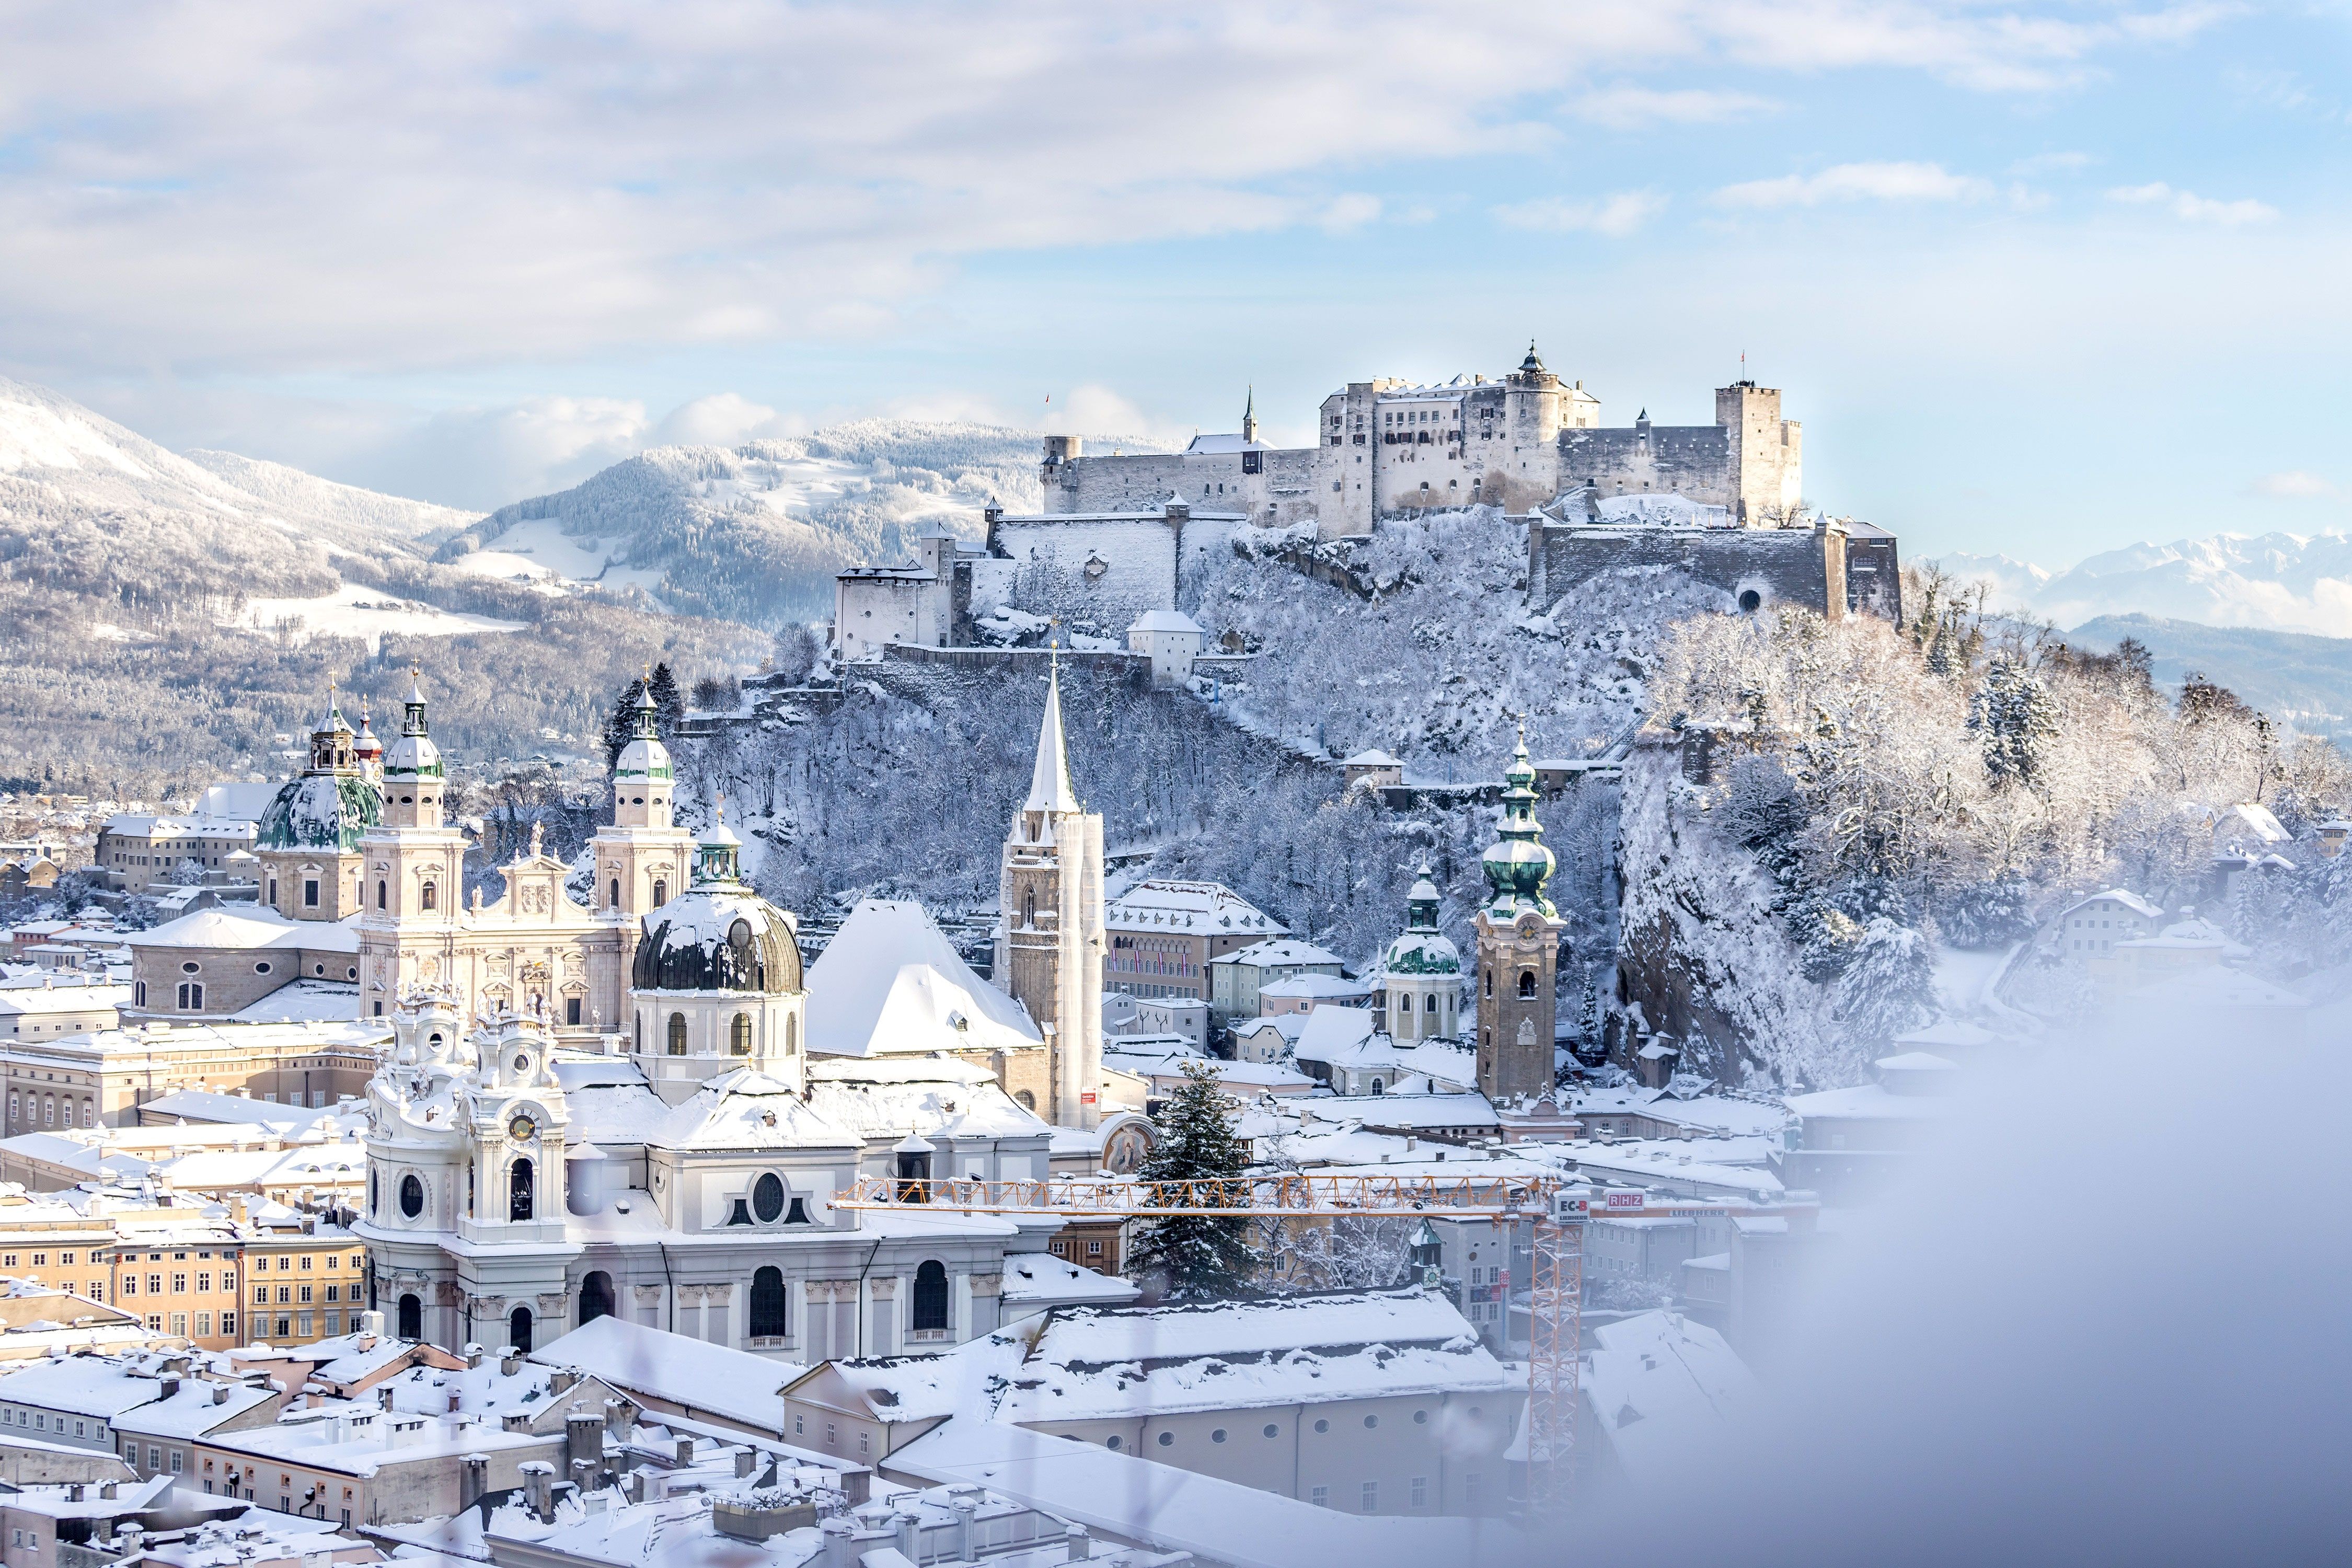 Winter Wonderlands Around the World. Condé Nast Traveler